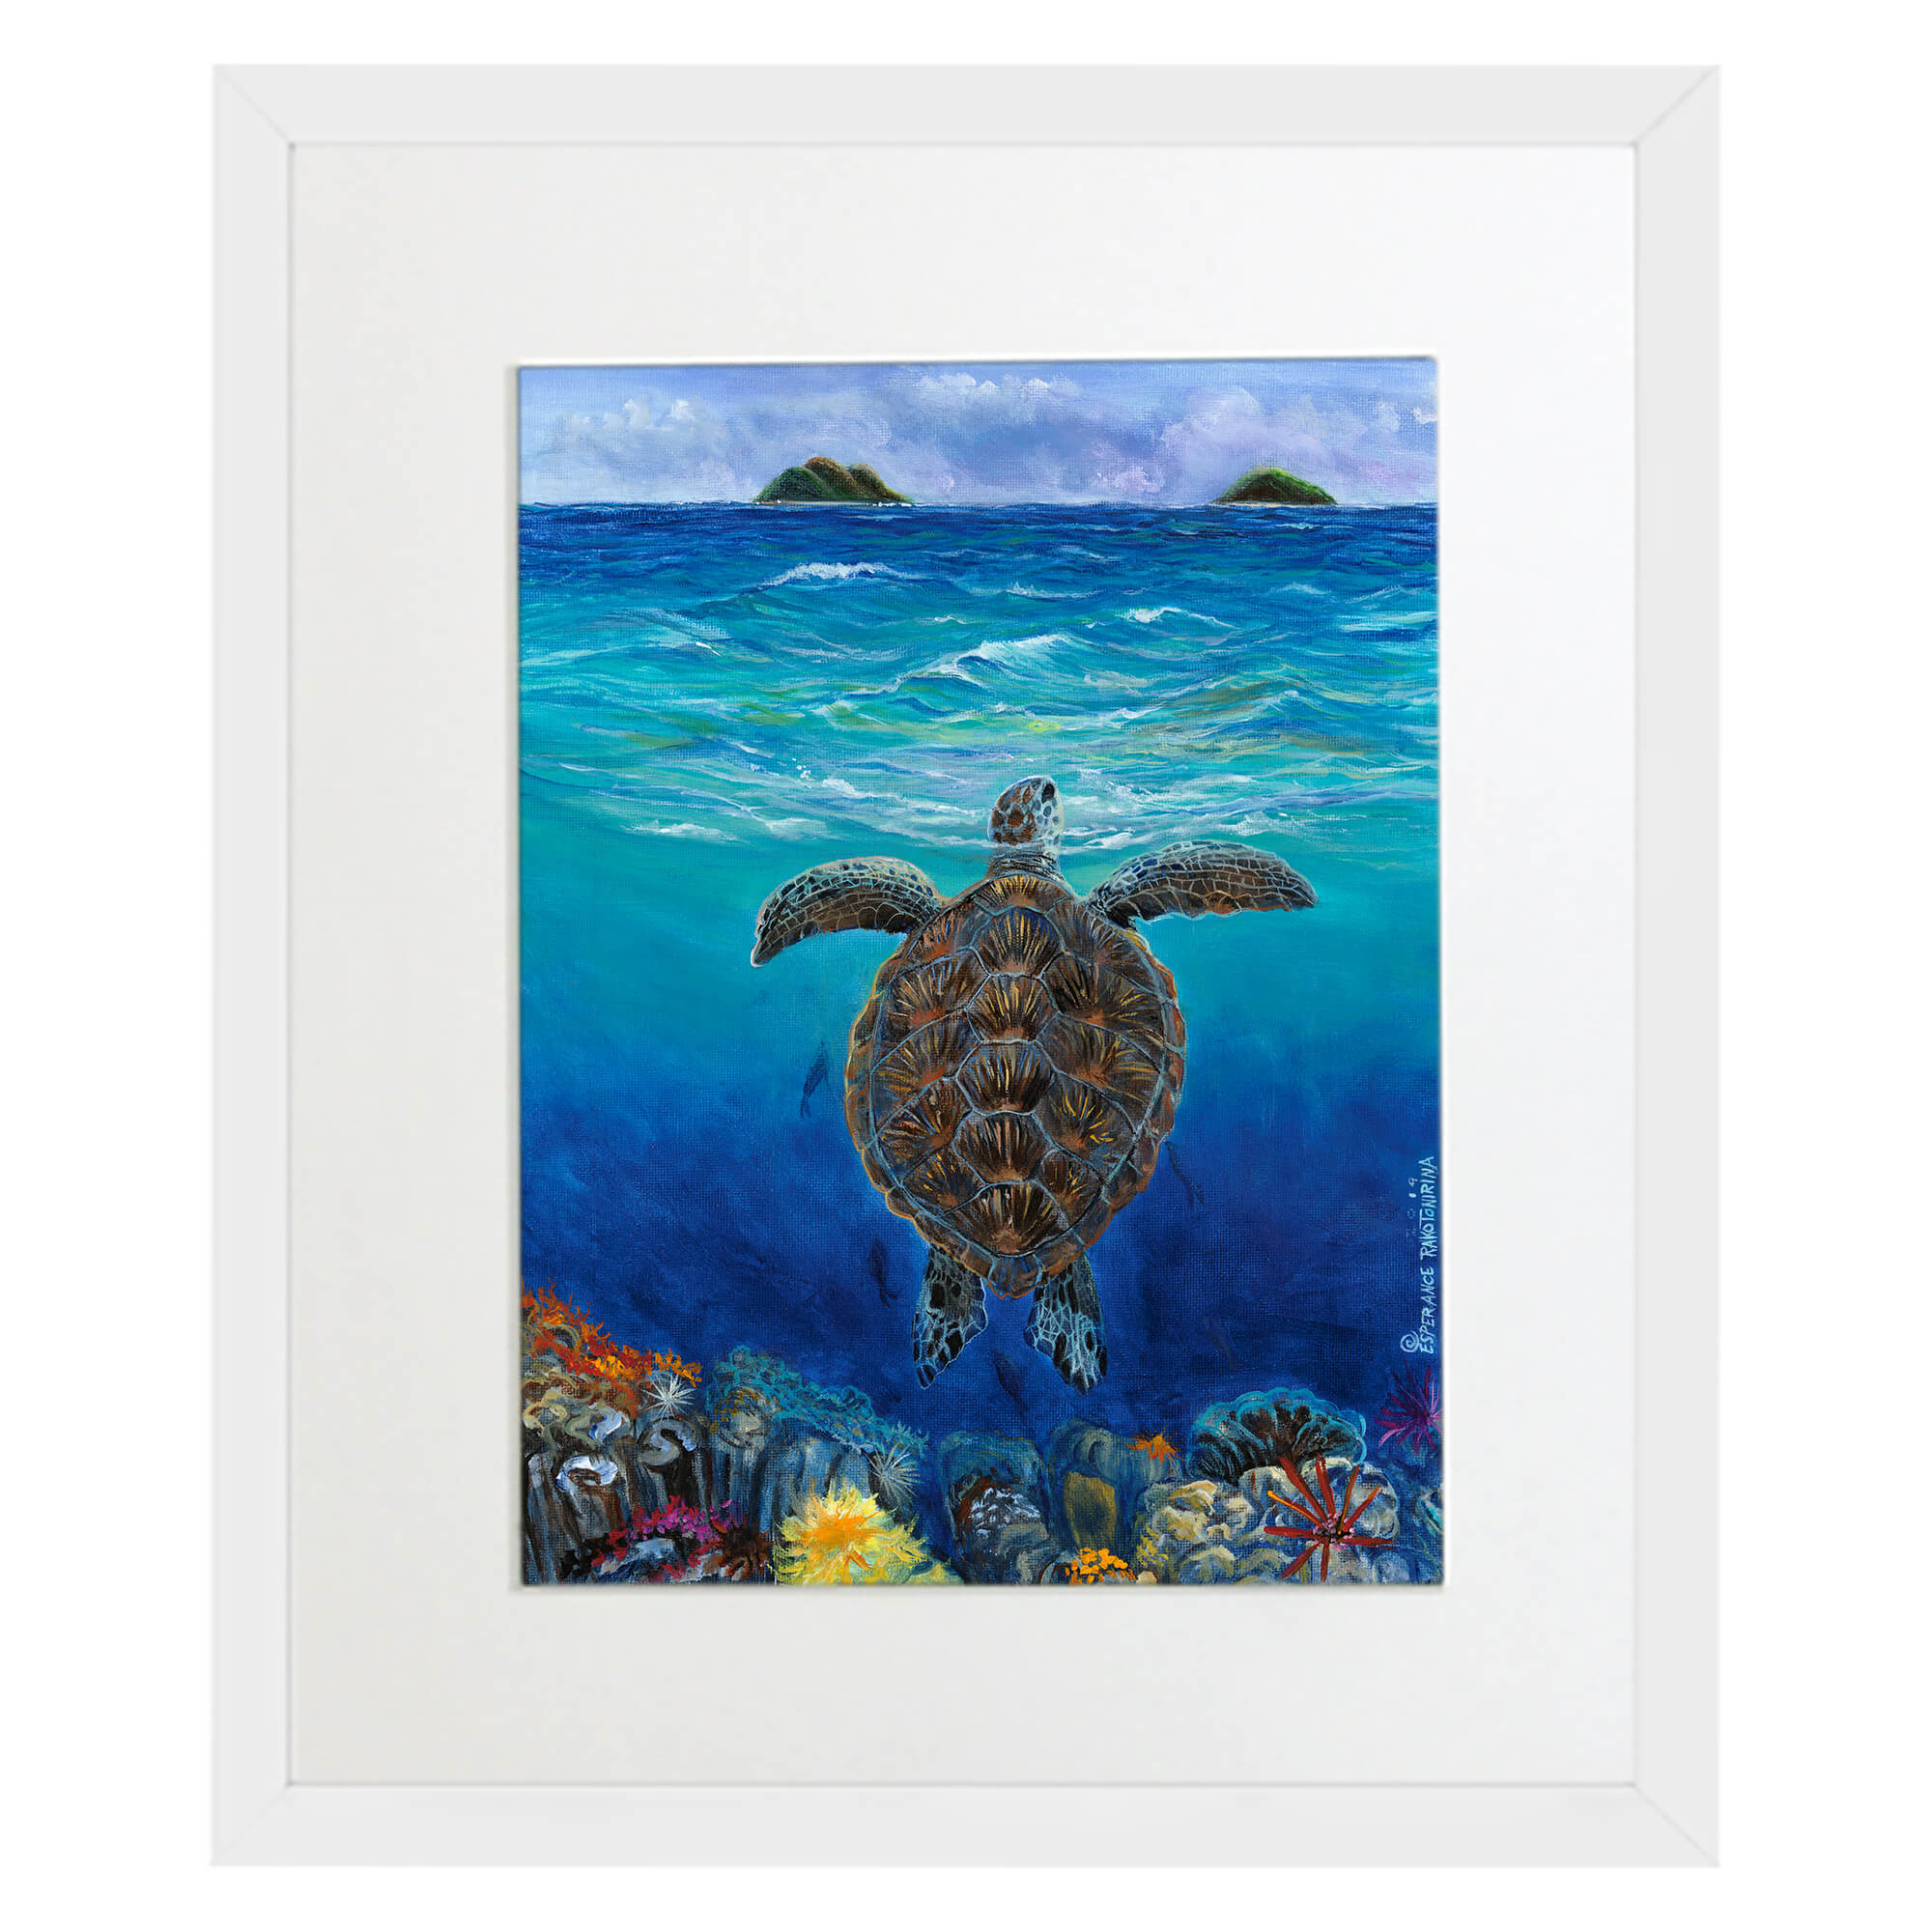 Matted art print with white frame featuring corals underwater by hawaii artist Esperance Rakotonirina